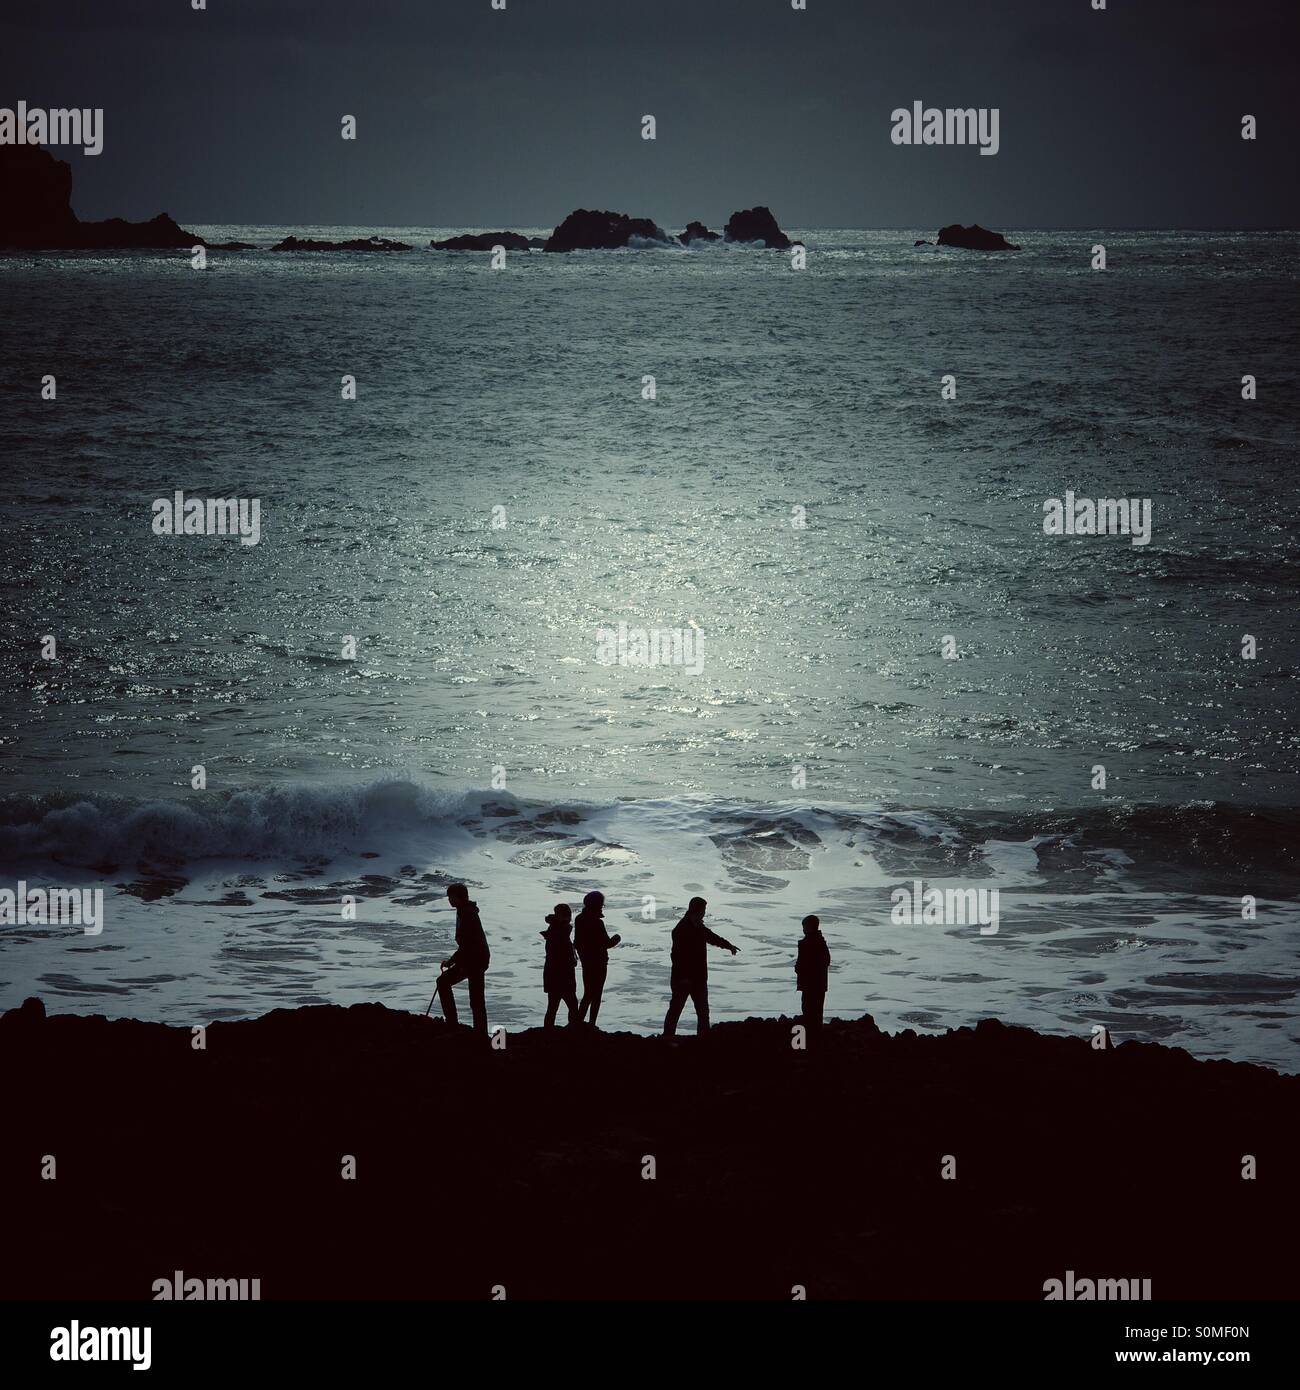 Cinq silhouettes sur une aventure à la mer. L'océan lune derrière eux. Banque D'Images